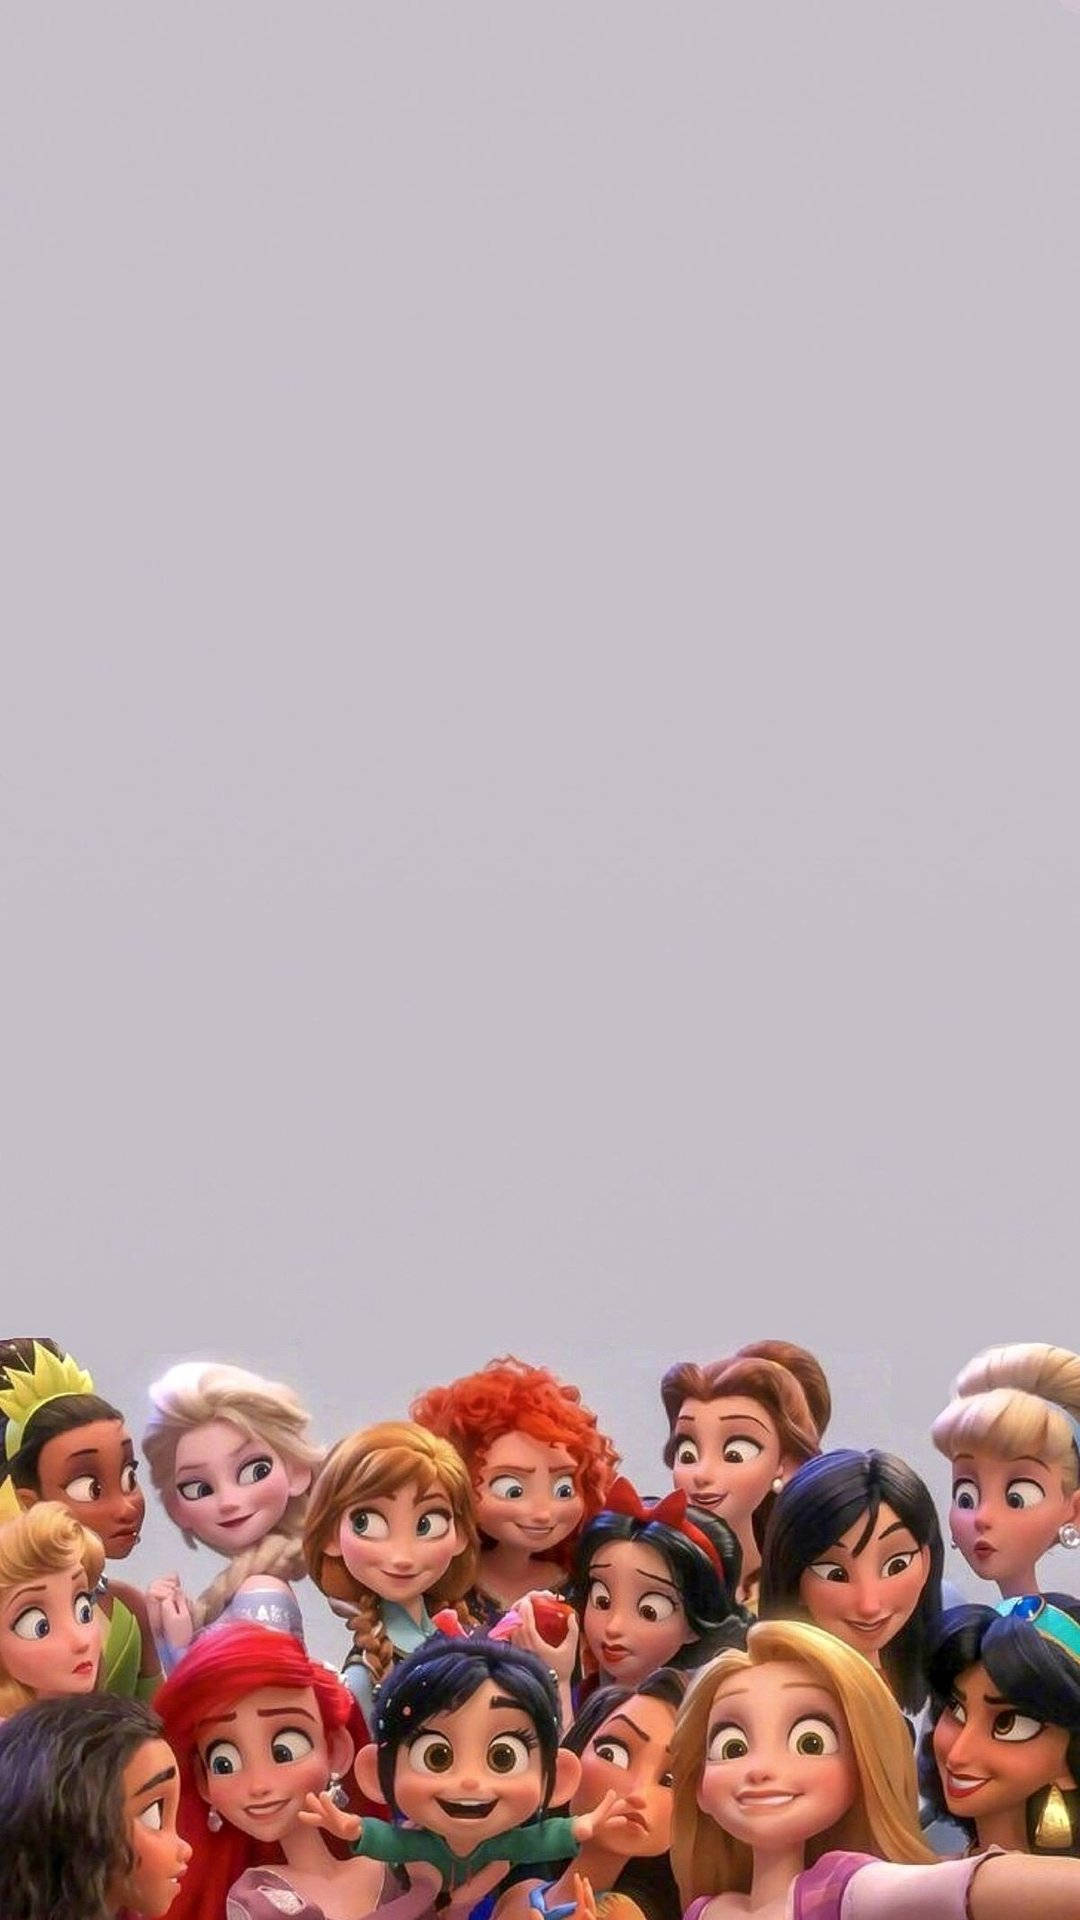 Disney Princesses Tumblr Aesthetic Wallpaper